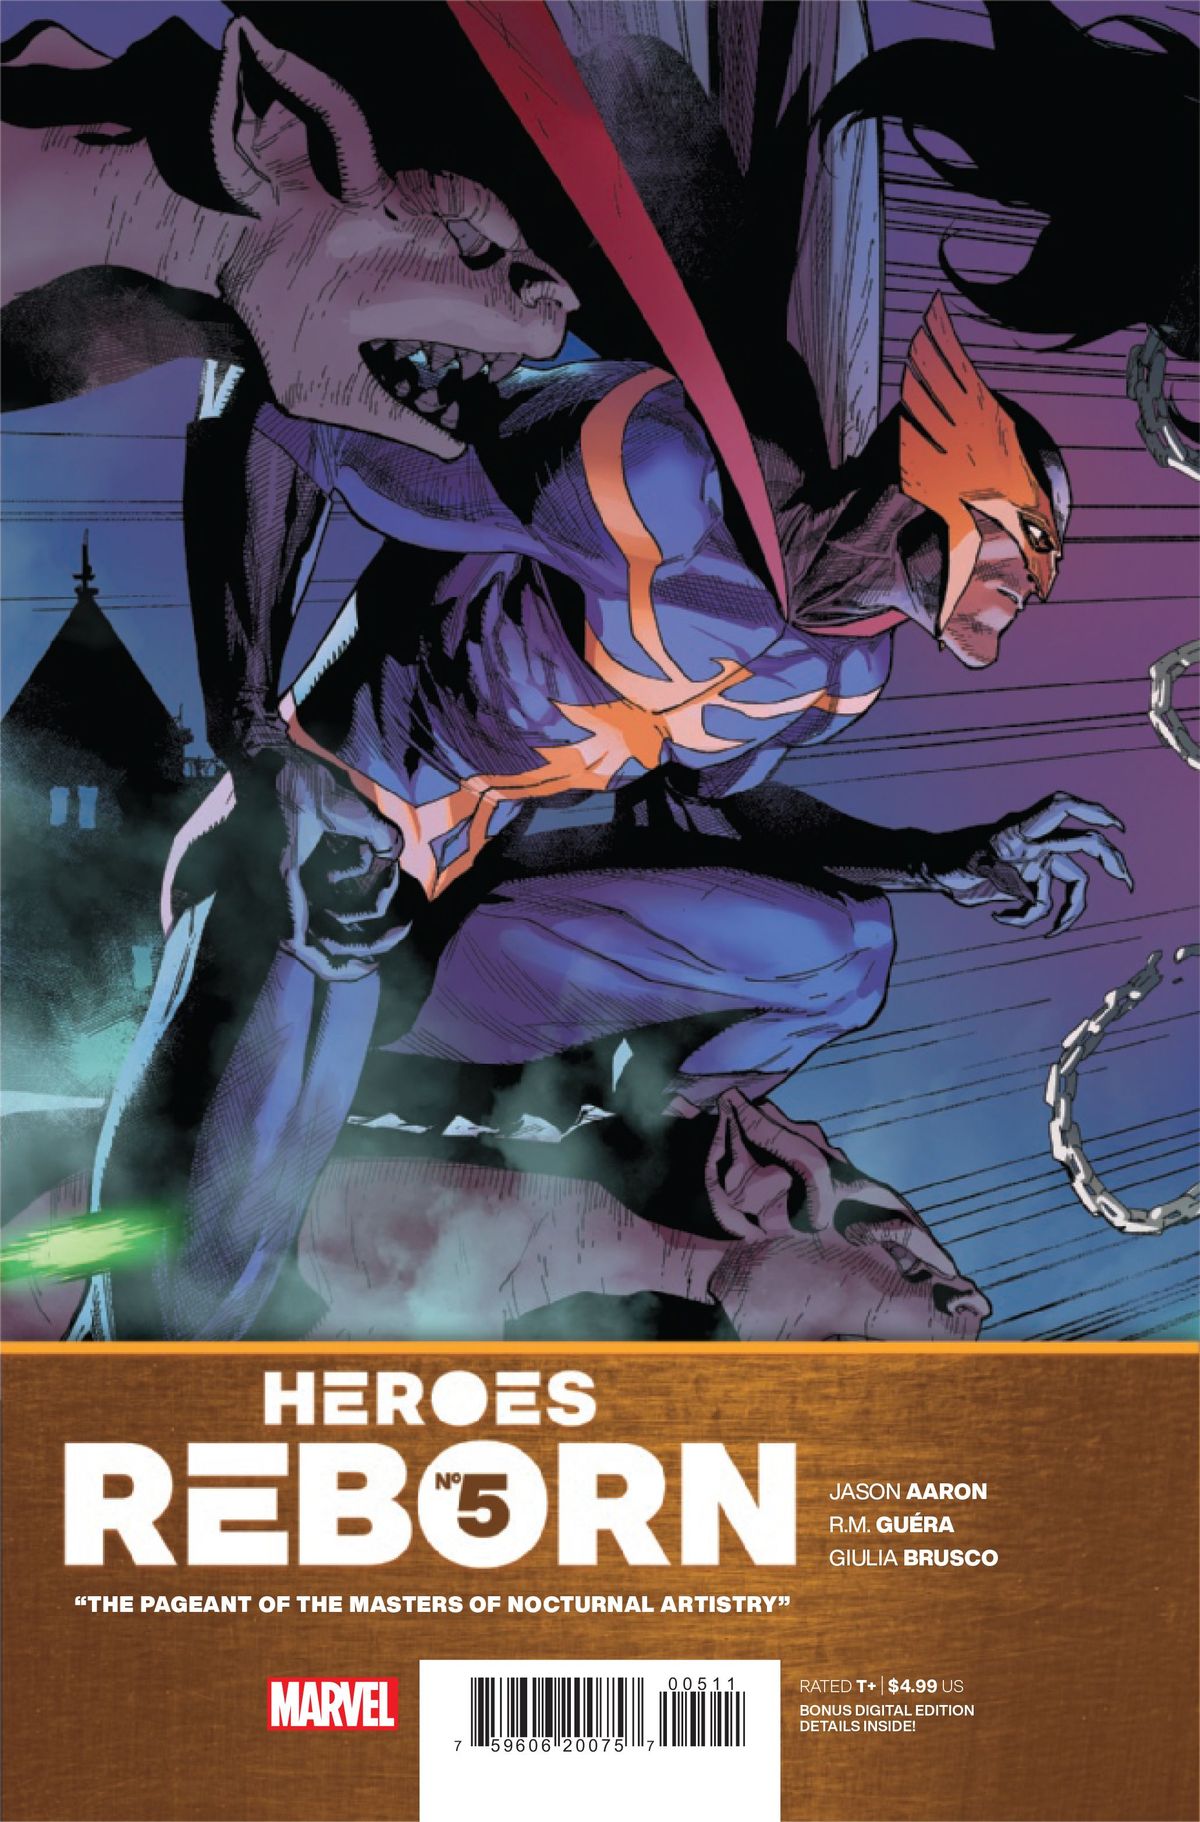 ΠΡΟΕΤΟΙΜΑΣΙΑ: Heroes Reborn # 5 Recreates του Kraven's Last Hunt with a Batman Twist (Exclusive)